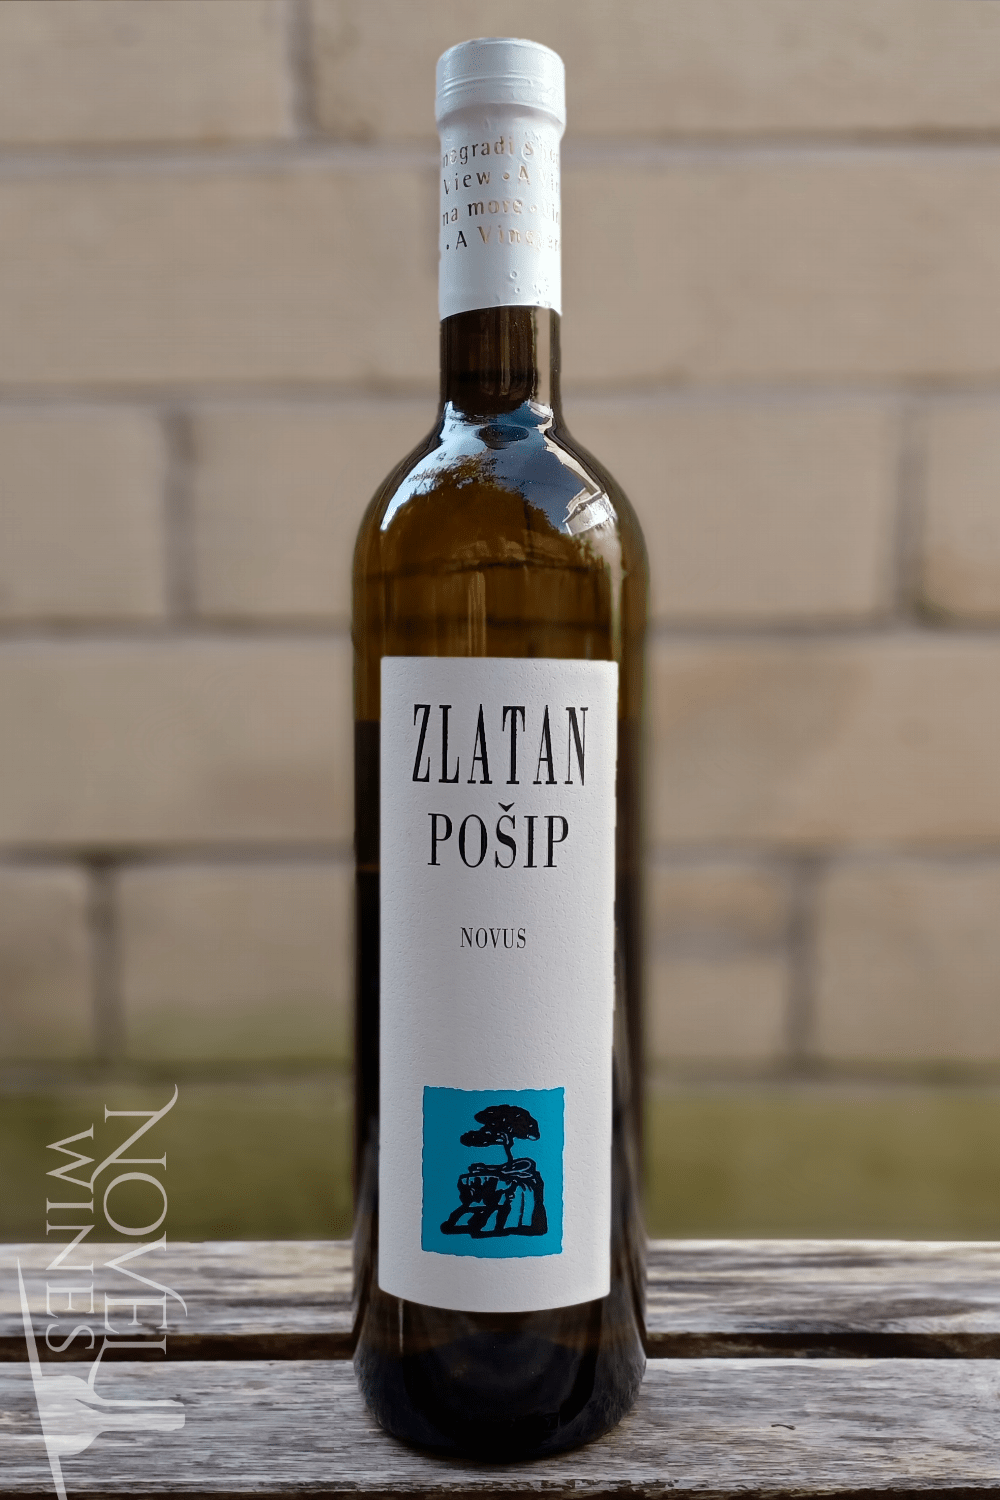 Novel Wines Zlatan Otok Posip Novus 2019, Croatia